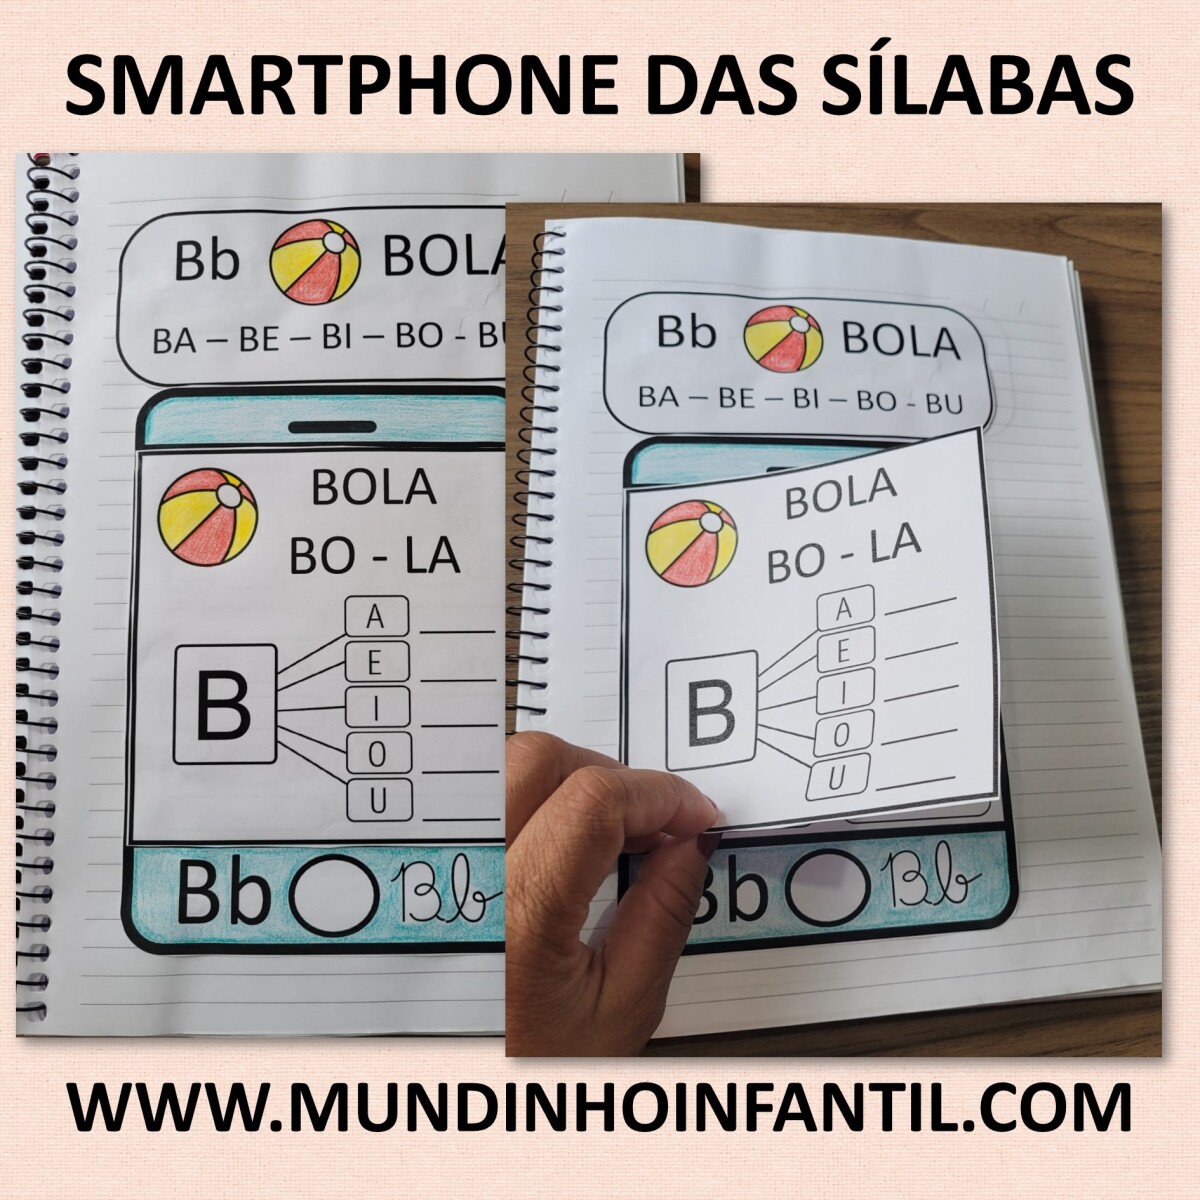 Imagem do produto Atividades sílabas simples smartphone das sílabas